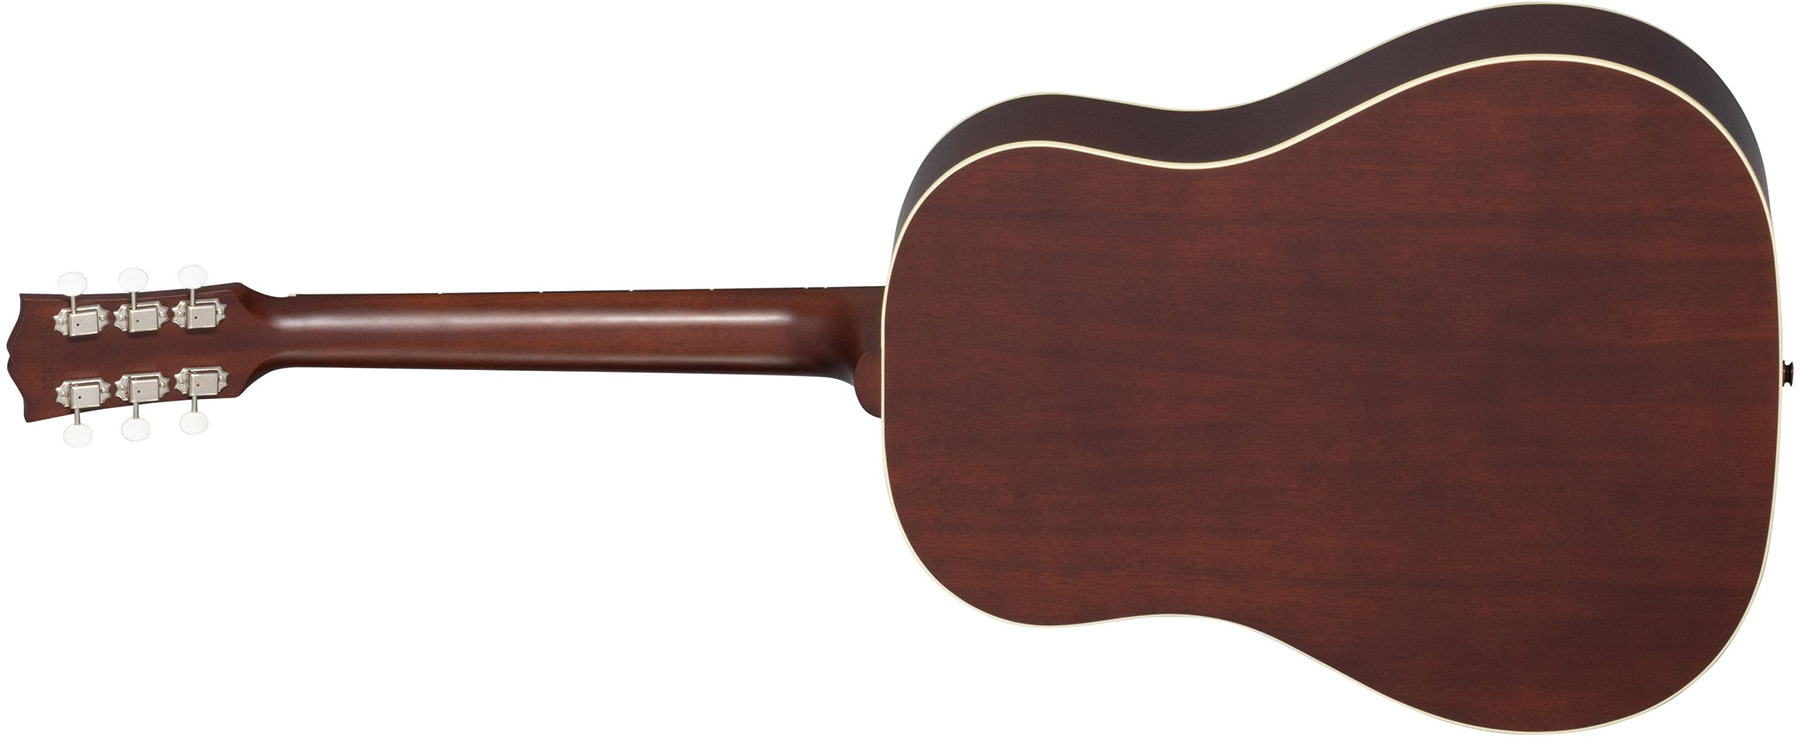 Gibson J-45 Faded 50s Original Dreadnought Epicea Acajou Rw - Vintage Sunburst - Guitare Acoustique - Variation 1